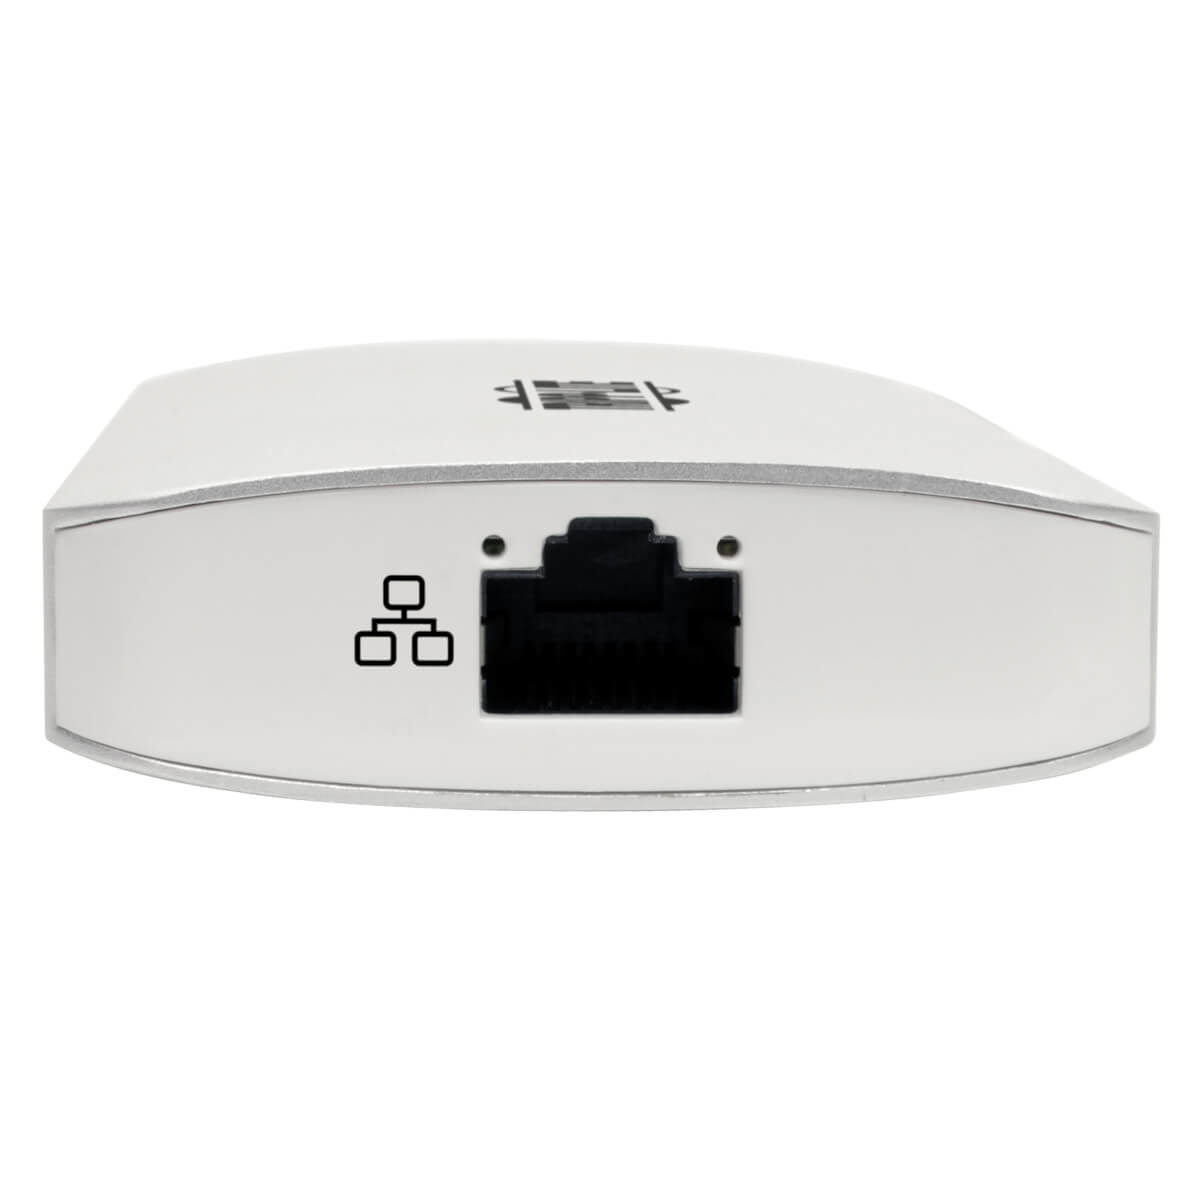 USB C Dock Station Hub HDMI Mem Card GBE